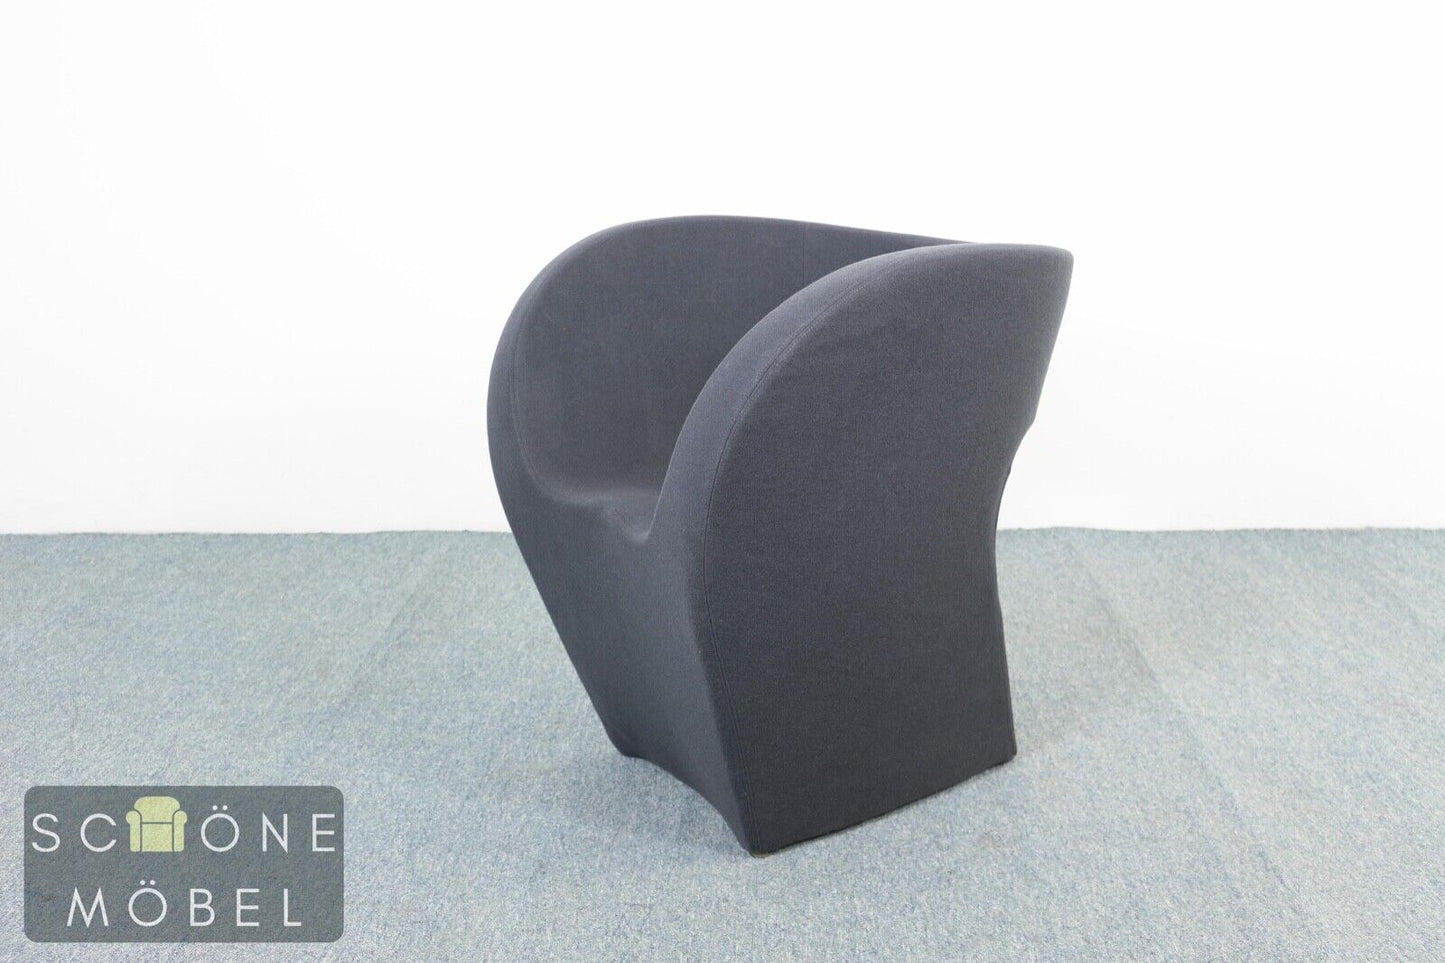 Stylische Lana Vergine Designer Sessel Modern Chair Made in Italy Armchair Stuhl